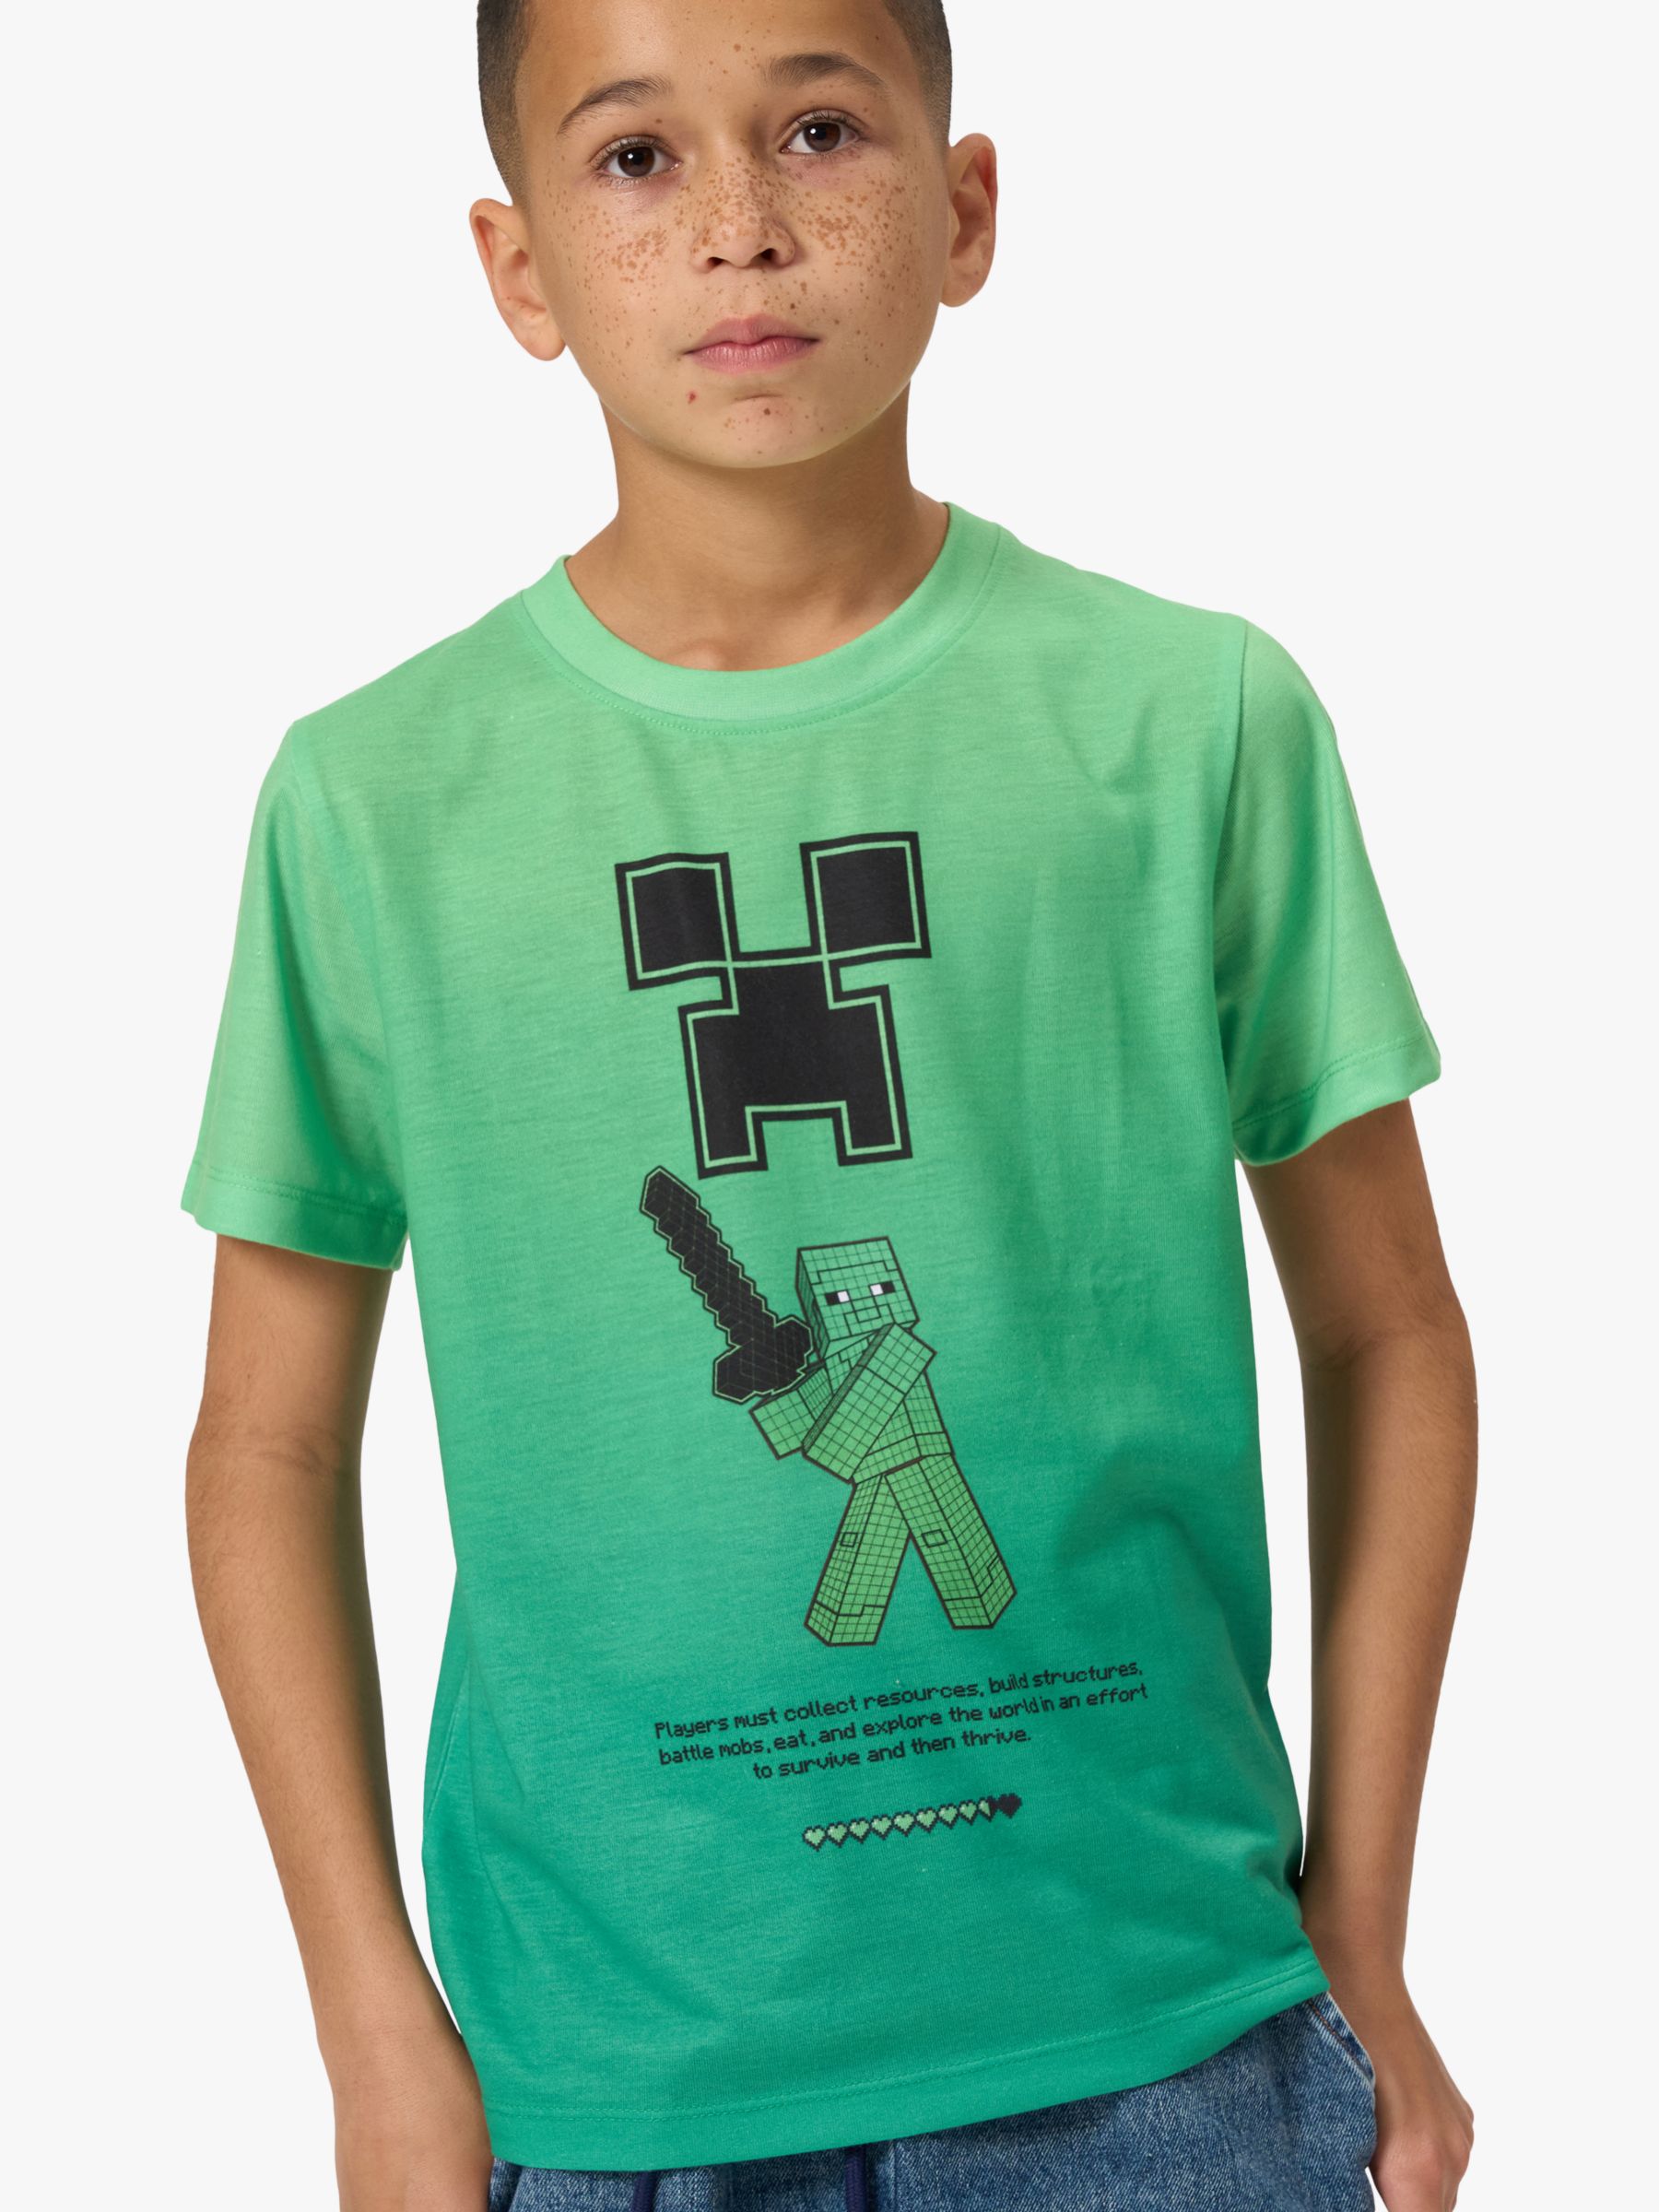 Детская футболка с рисунком Minecraft Angel & Rocket, зеленый